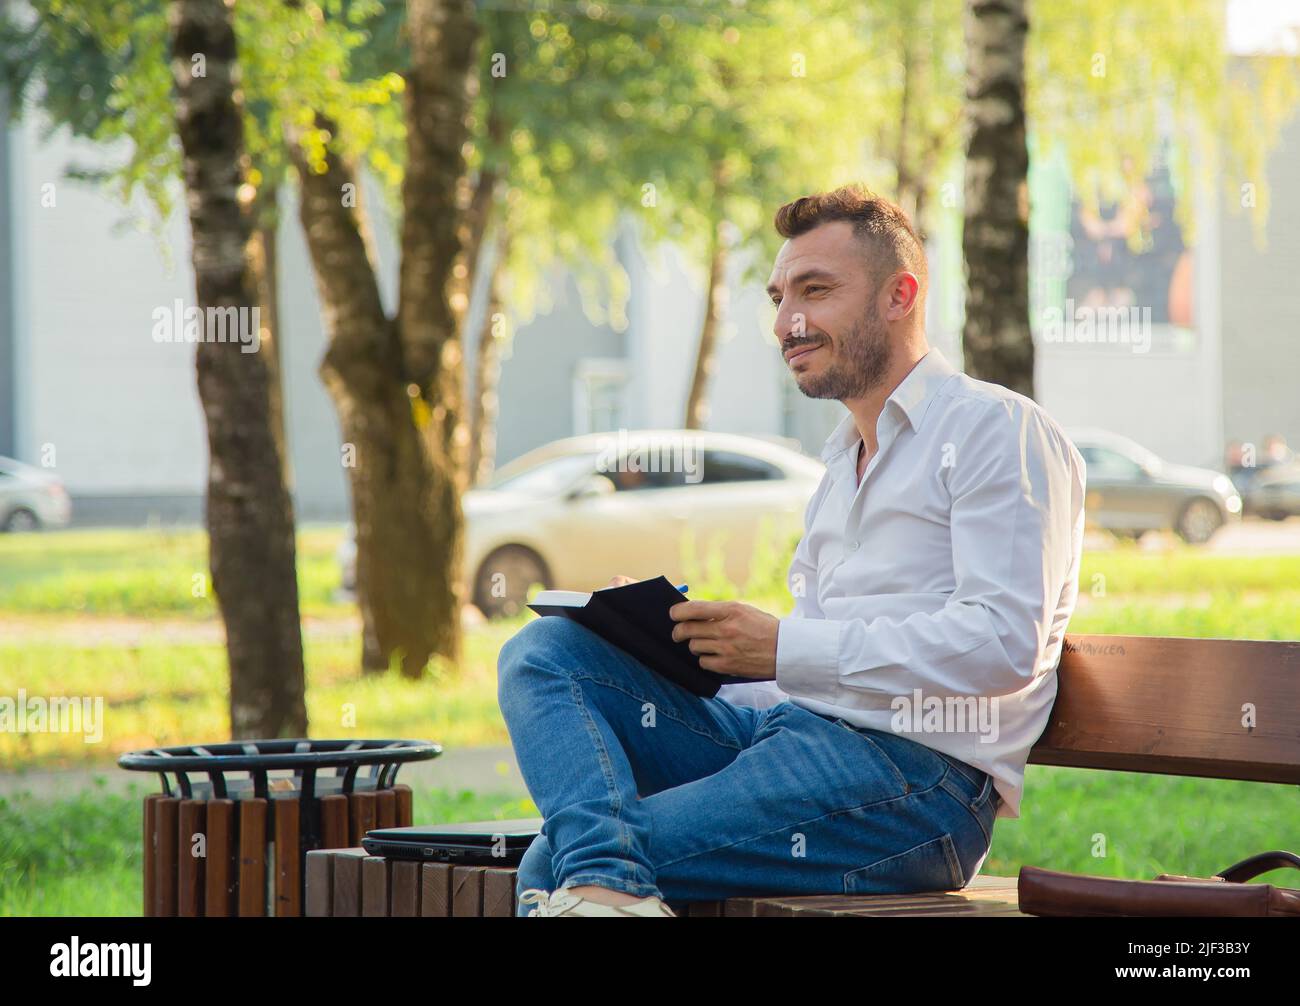 Un uomo felice si siede su una panca, fa i piani, scrive in un taccuino. Un giovane uomo su uno sfondo di alberi verdi, una calda giornata estiva di sole. Luce calda e soffusa, primo piano. Foto Stock